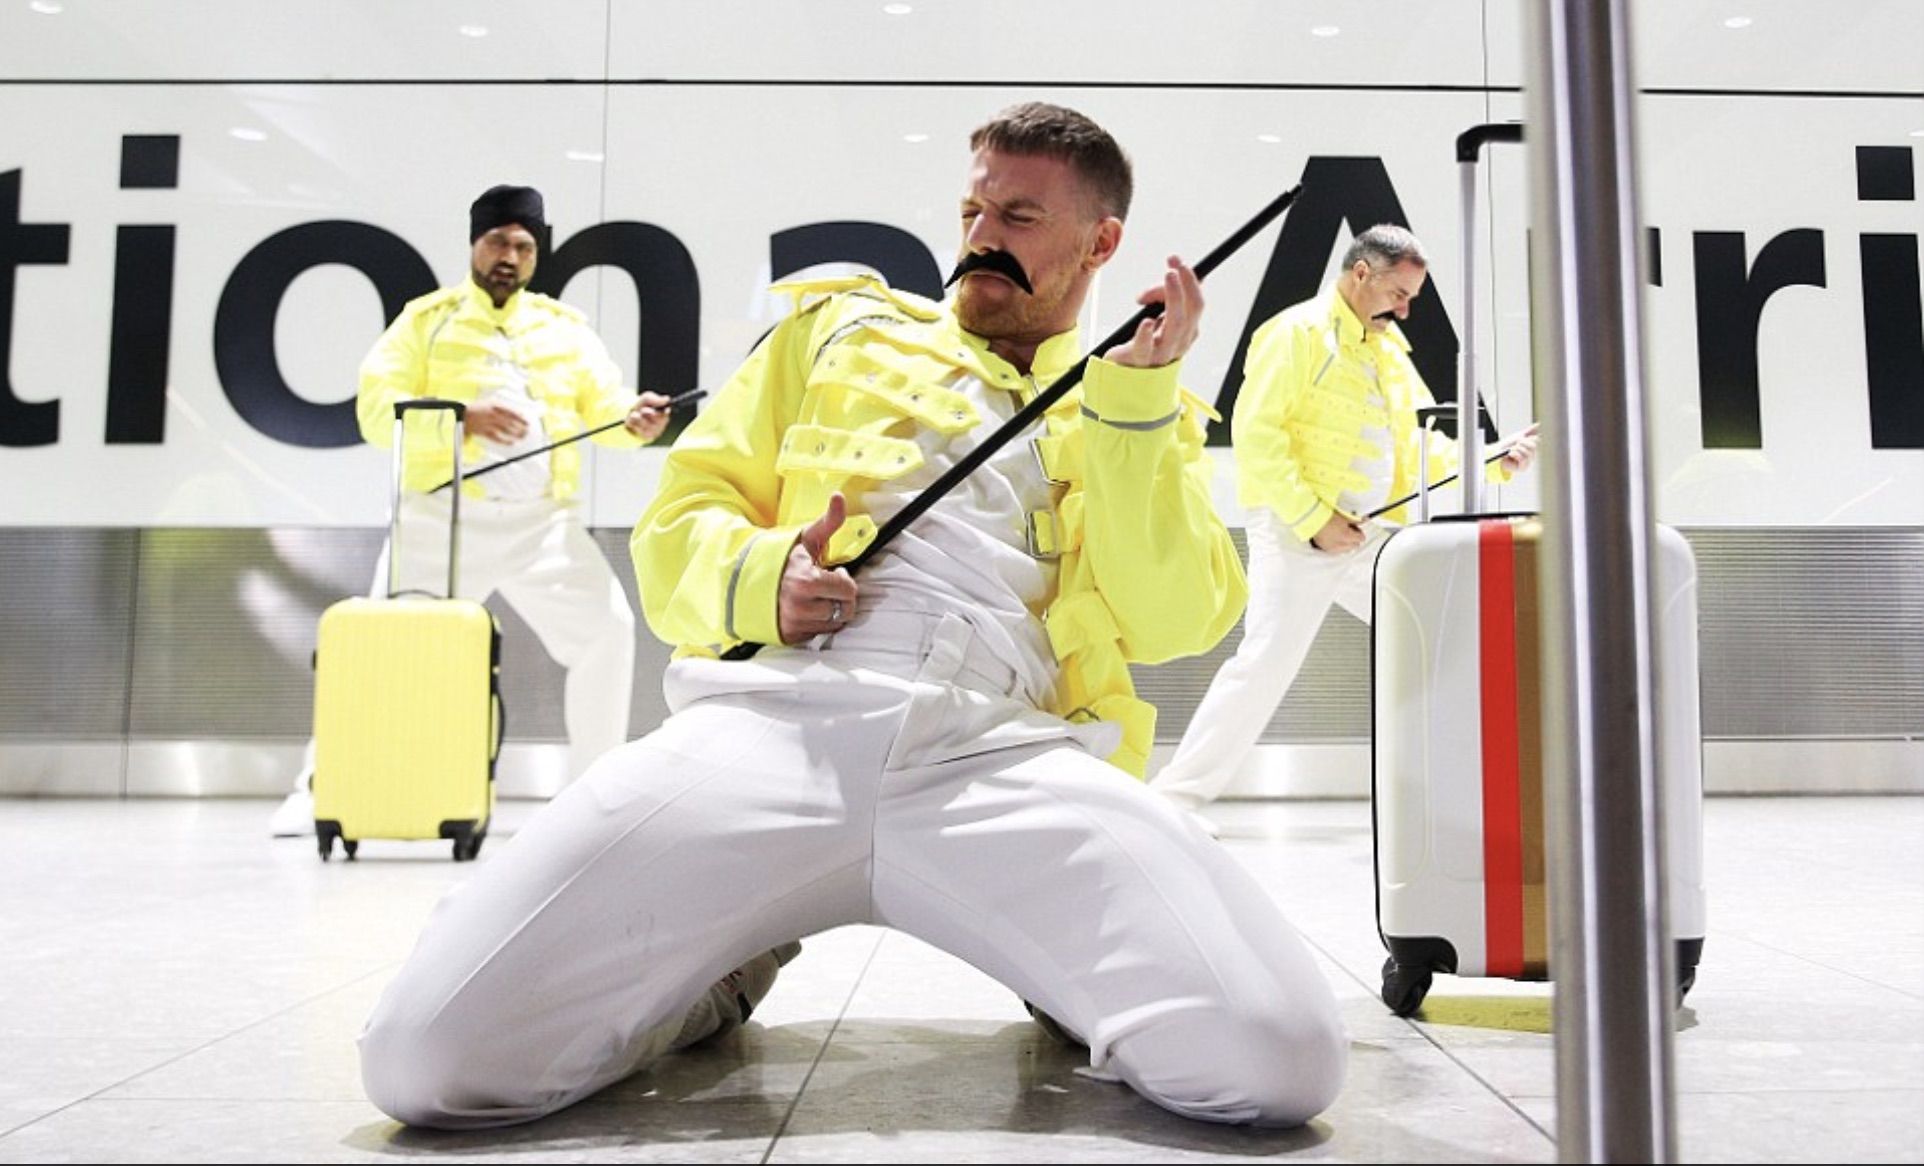 Baggage handlers at Heathrow in London celebrating Freddie Mercury